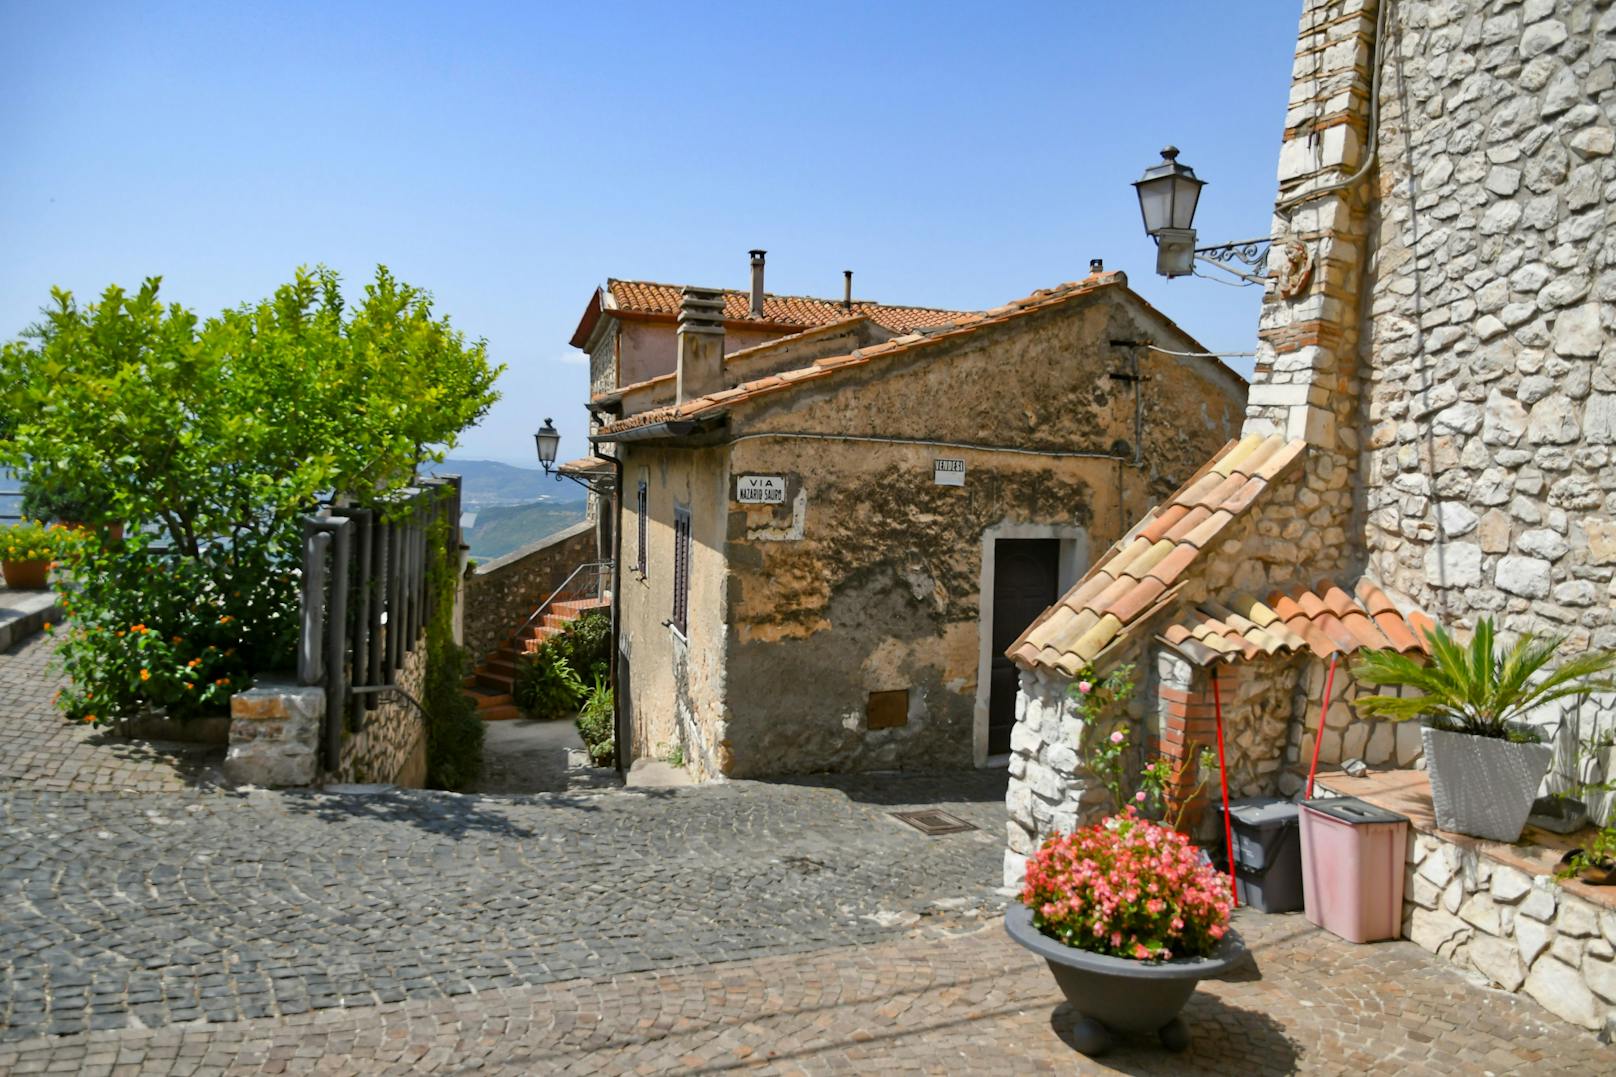 Maenza in Italien könnte deine neue Heimat werden - um nur 1 Euro.